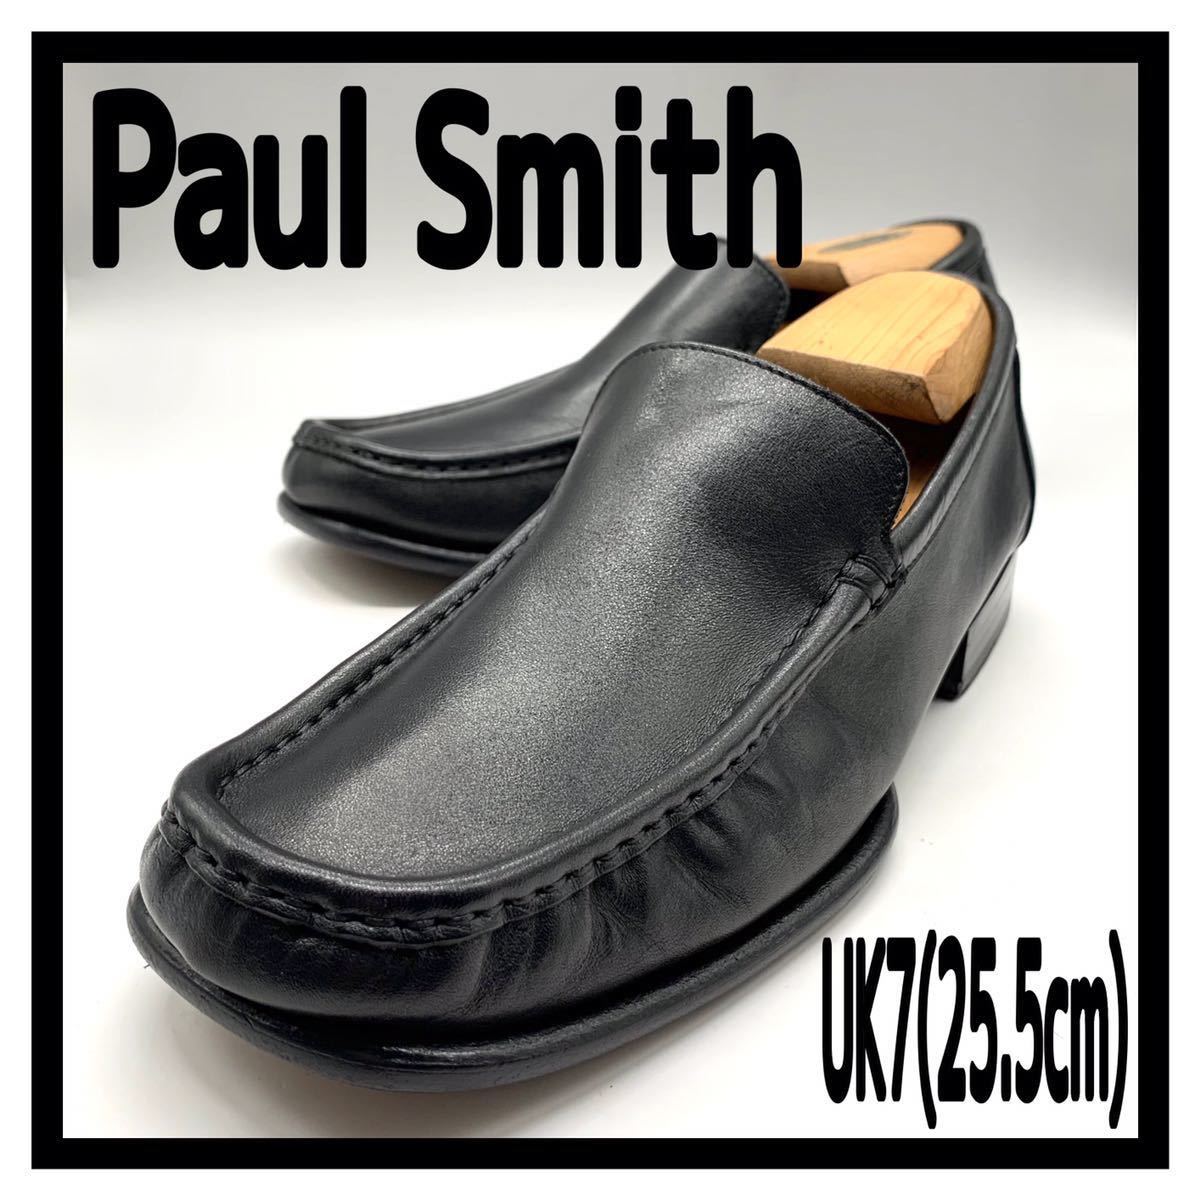 Paul Smith (ポールスミス) ローファー スリッポン モカシンシューズ ビジネス レザー ブラック 黒 UK7 41 25.5cm 革靴  メンズ